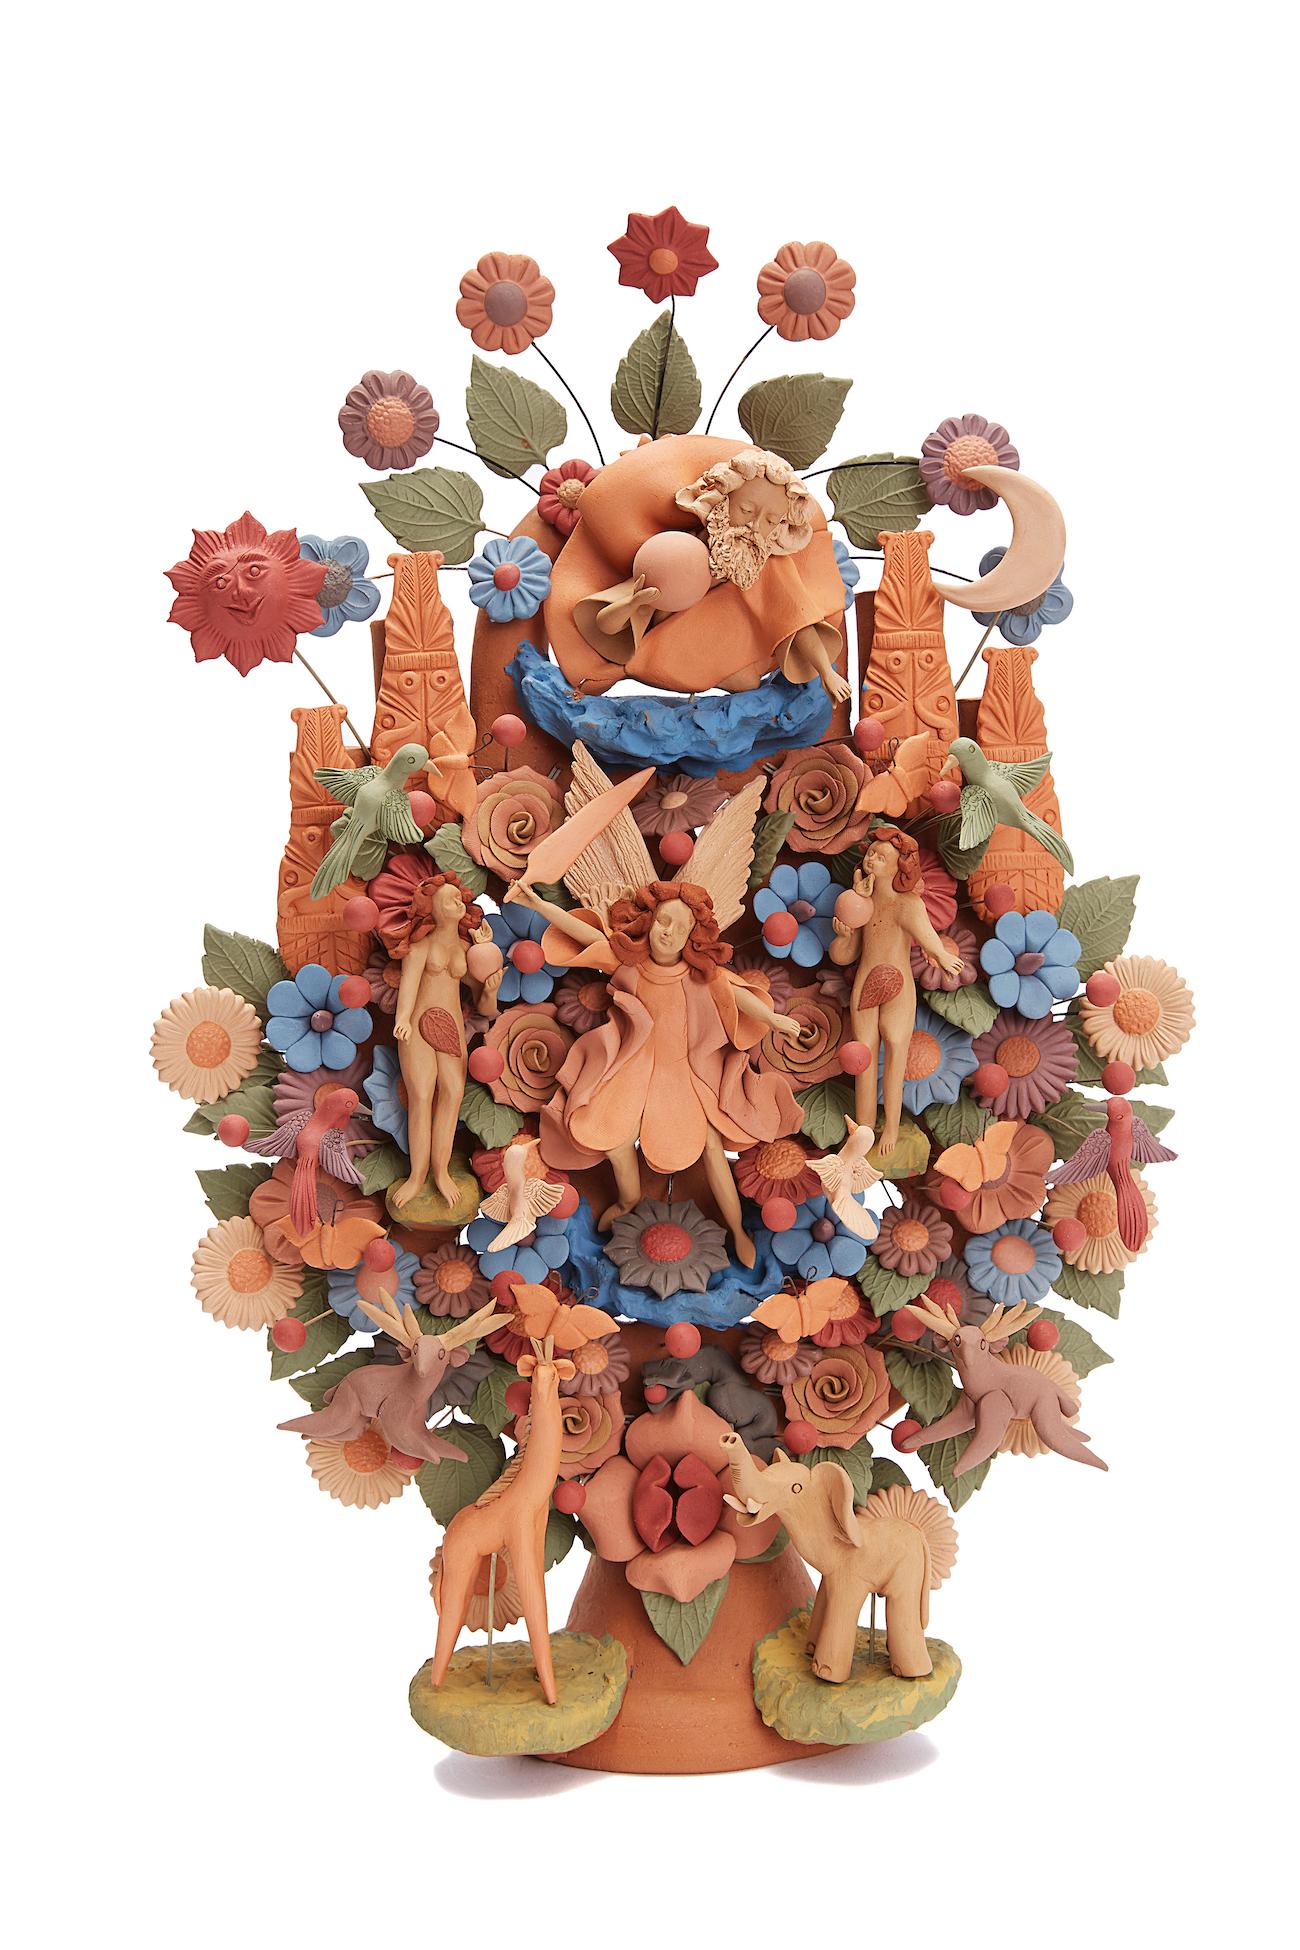 Arbol de la vida -  Tree of life  / Ceramics Mexican Folk Art Clay 7